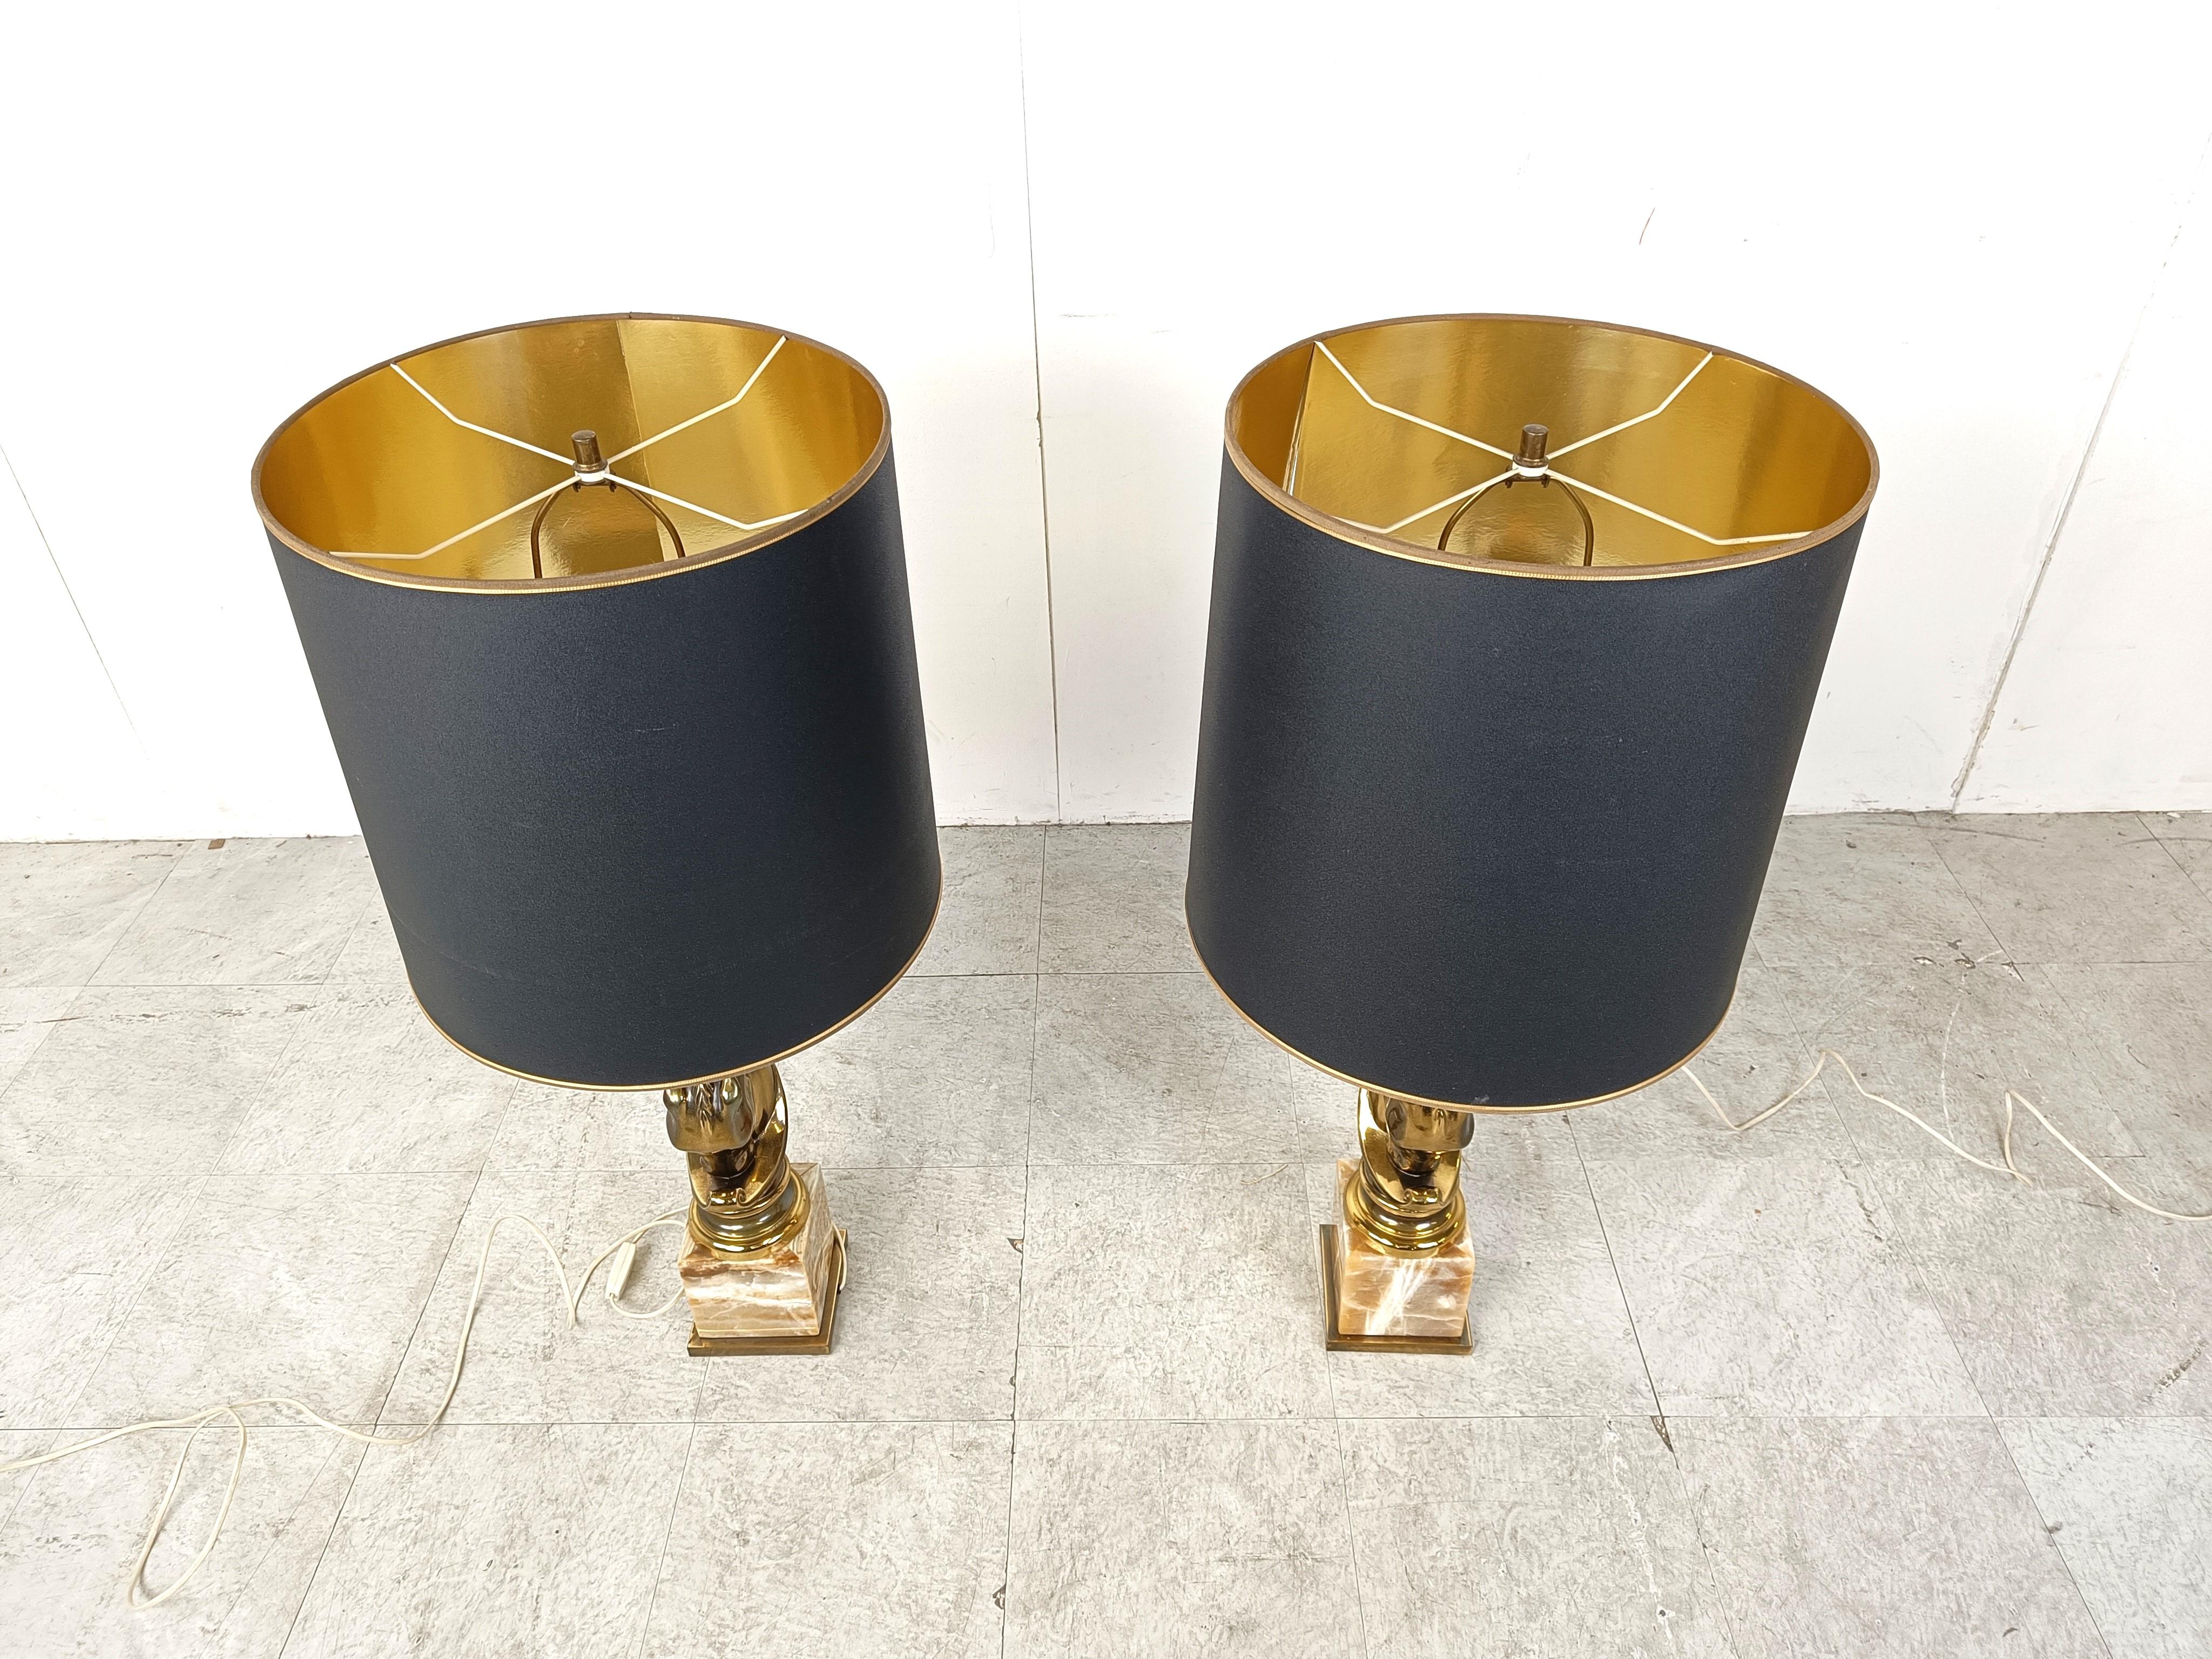 Ein Paar Vintage-Pferdekopf-Tischlampen von Deknudt.

Hollywood-Regency-Stil.

Hergestellt aus 24kt vergoldetem Metall und Onyx-Marmorsockel.

Für die Verwendung mit einer normalen E27-Glühbirne.

Wunderschöne zylindrische Lampenschirme mit einer